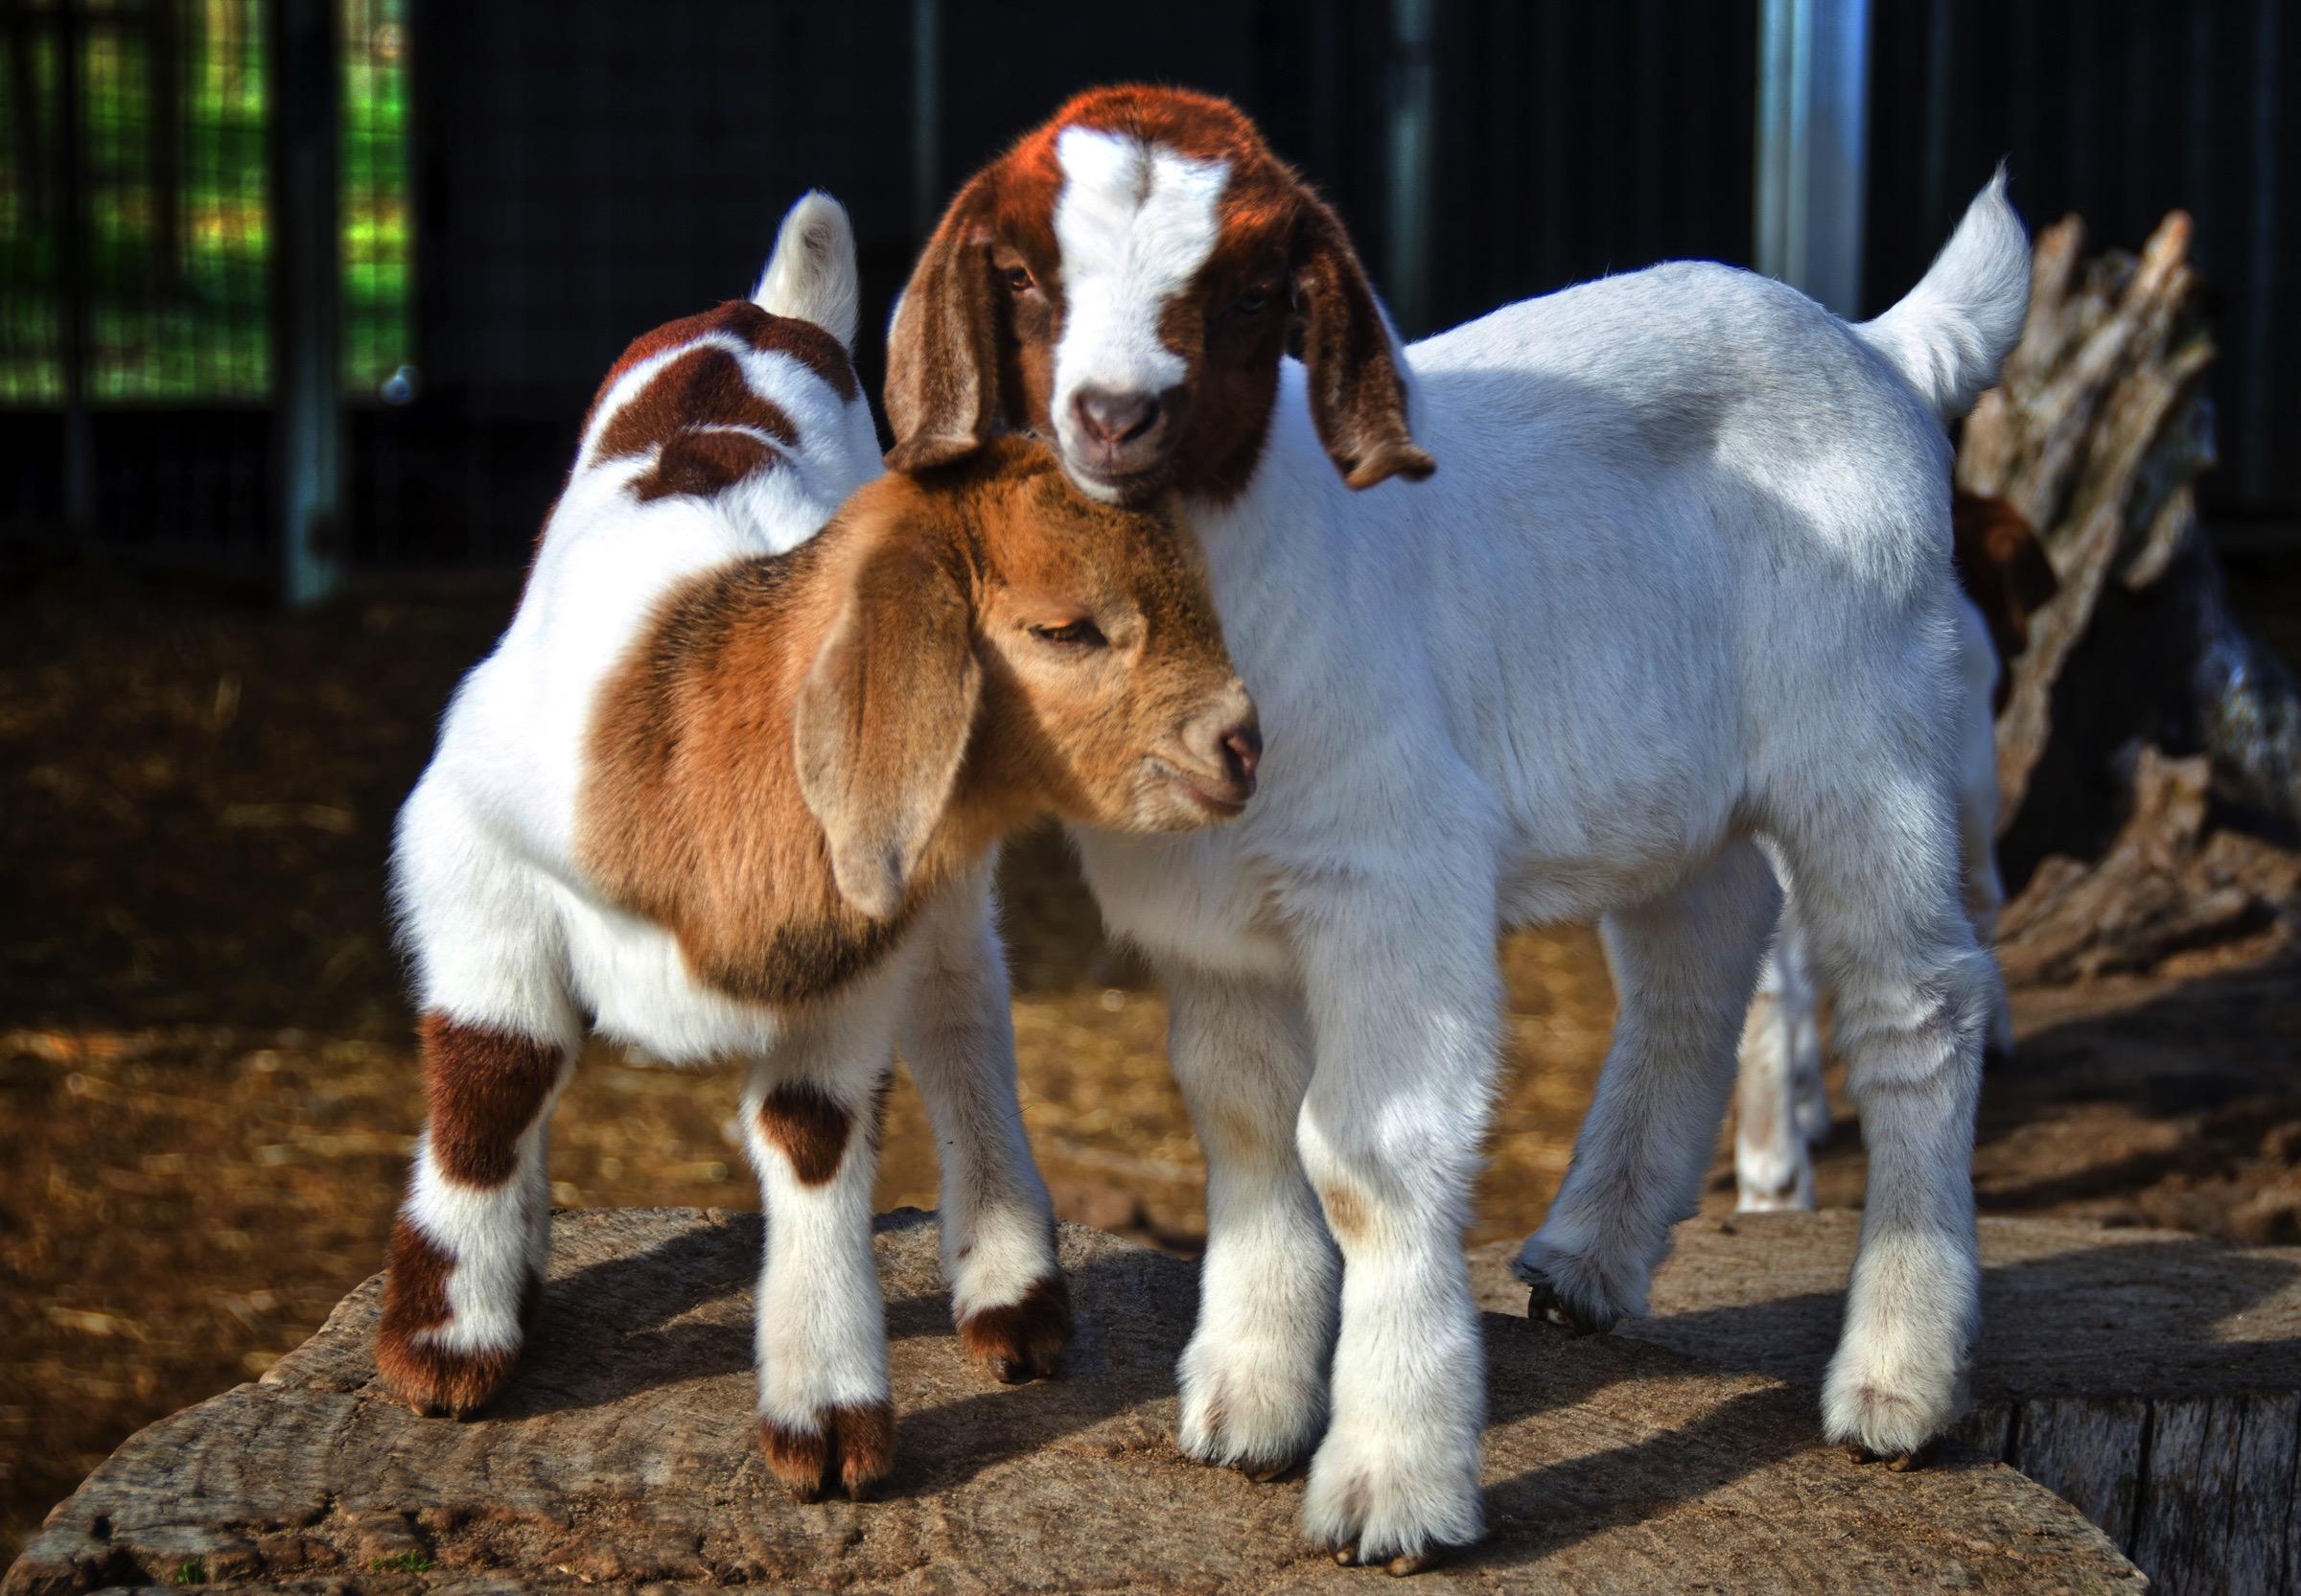 Perbeemd is een dierenartsenpraktijk die zich richt op landbouwhuisdieren, paarden, geiten, schapen en varkens. 